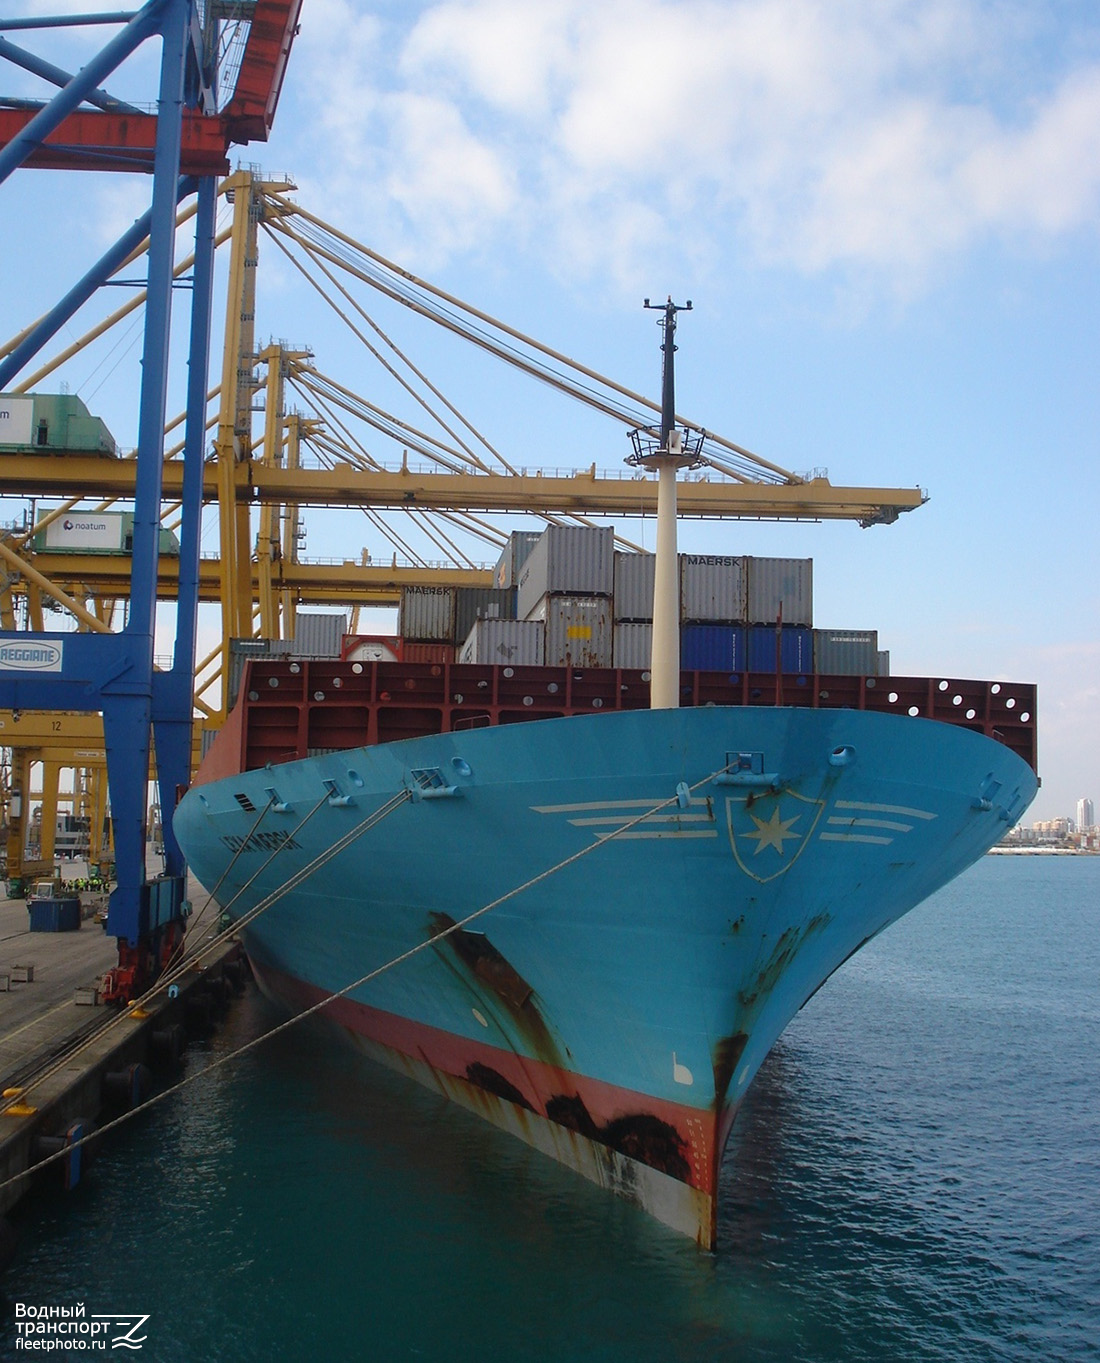 Lexa Maersk